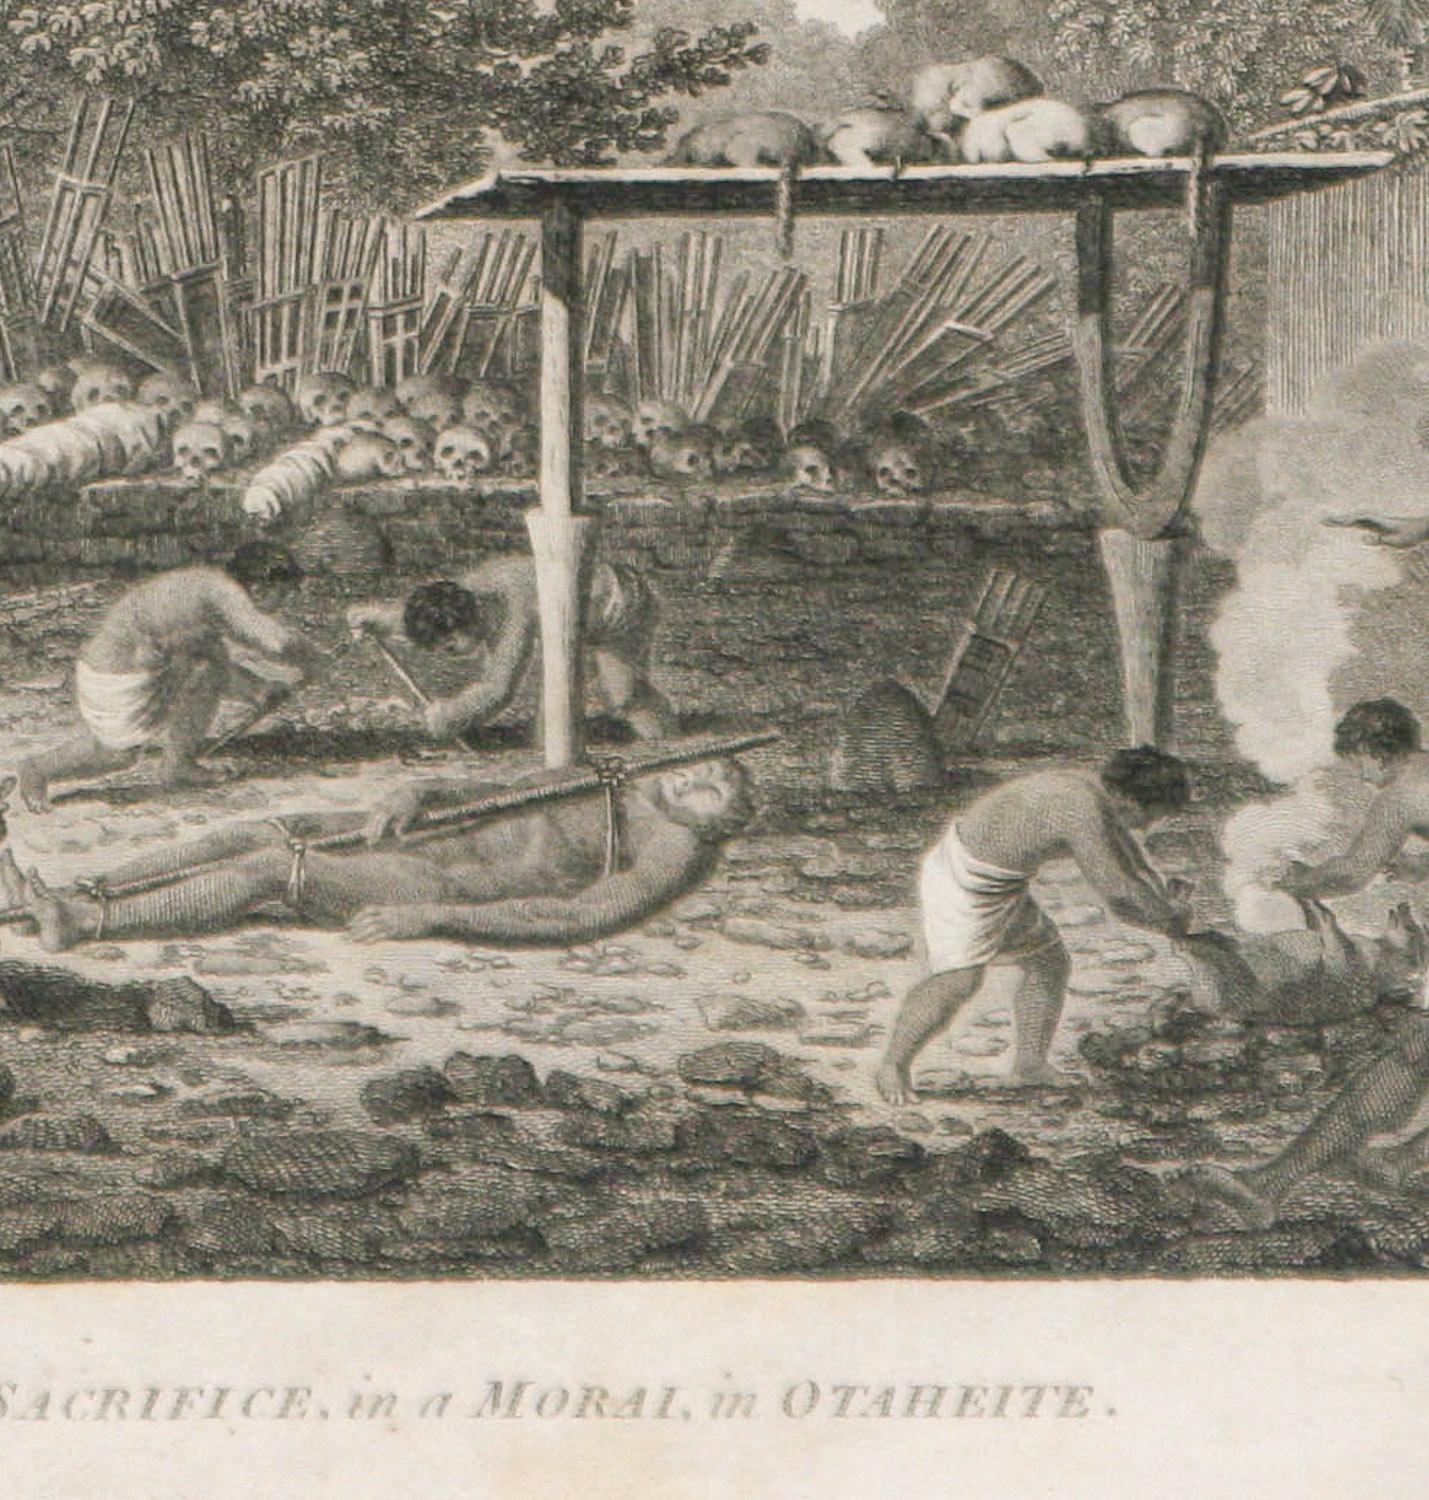 Un sauvetage humain dans un Morai, à Otaheite (Tahiti) 1784 James Cook Final Voyage - Gris Landscape Print par John Webber